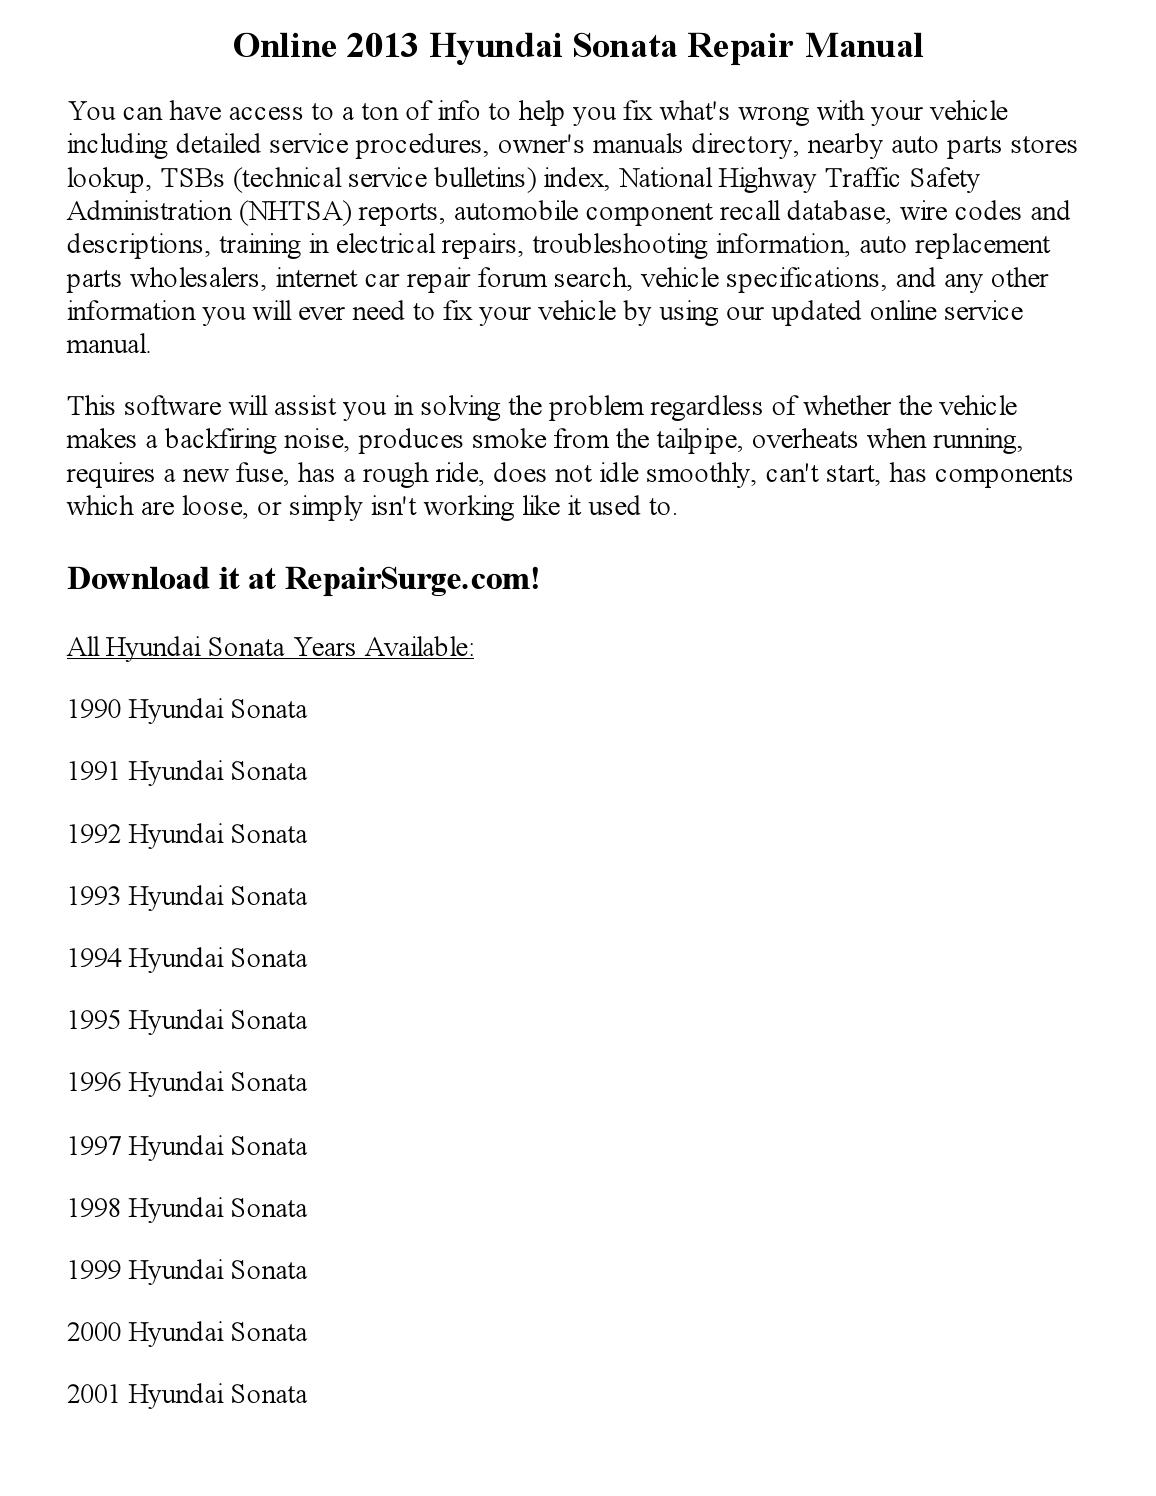 Hyundai Sonata Repair Manual Free Download